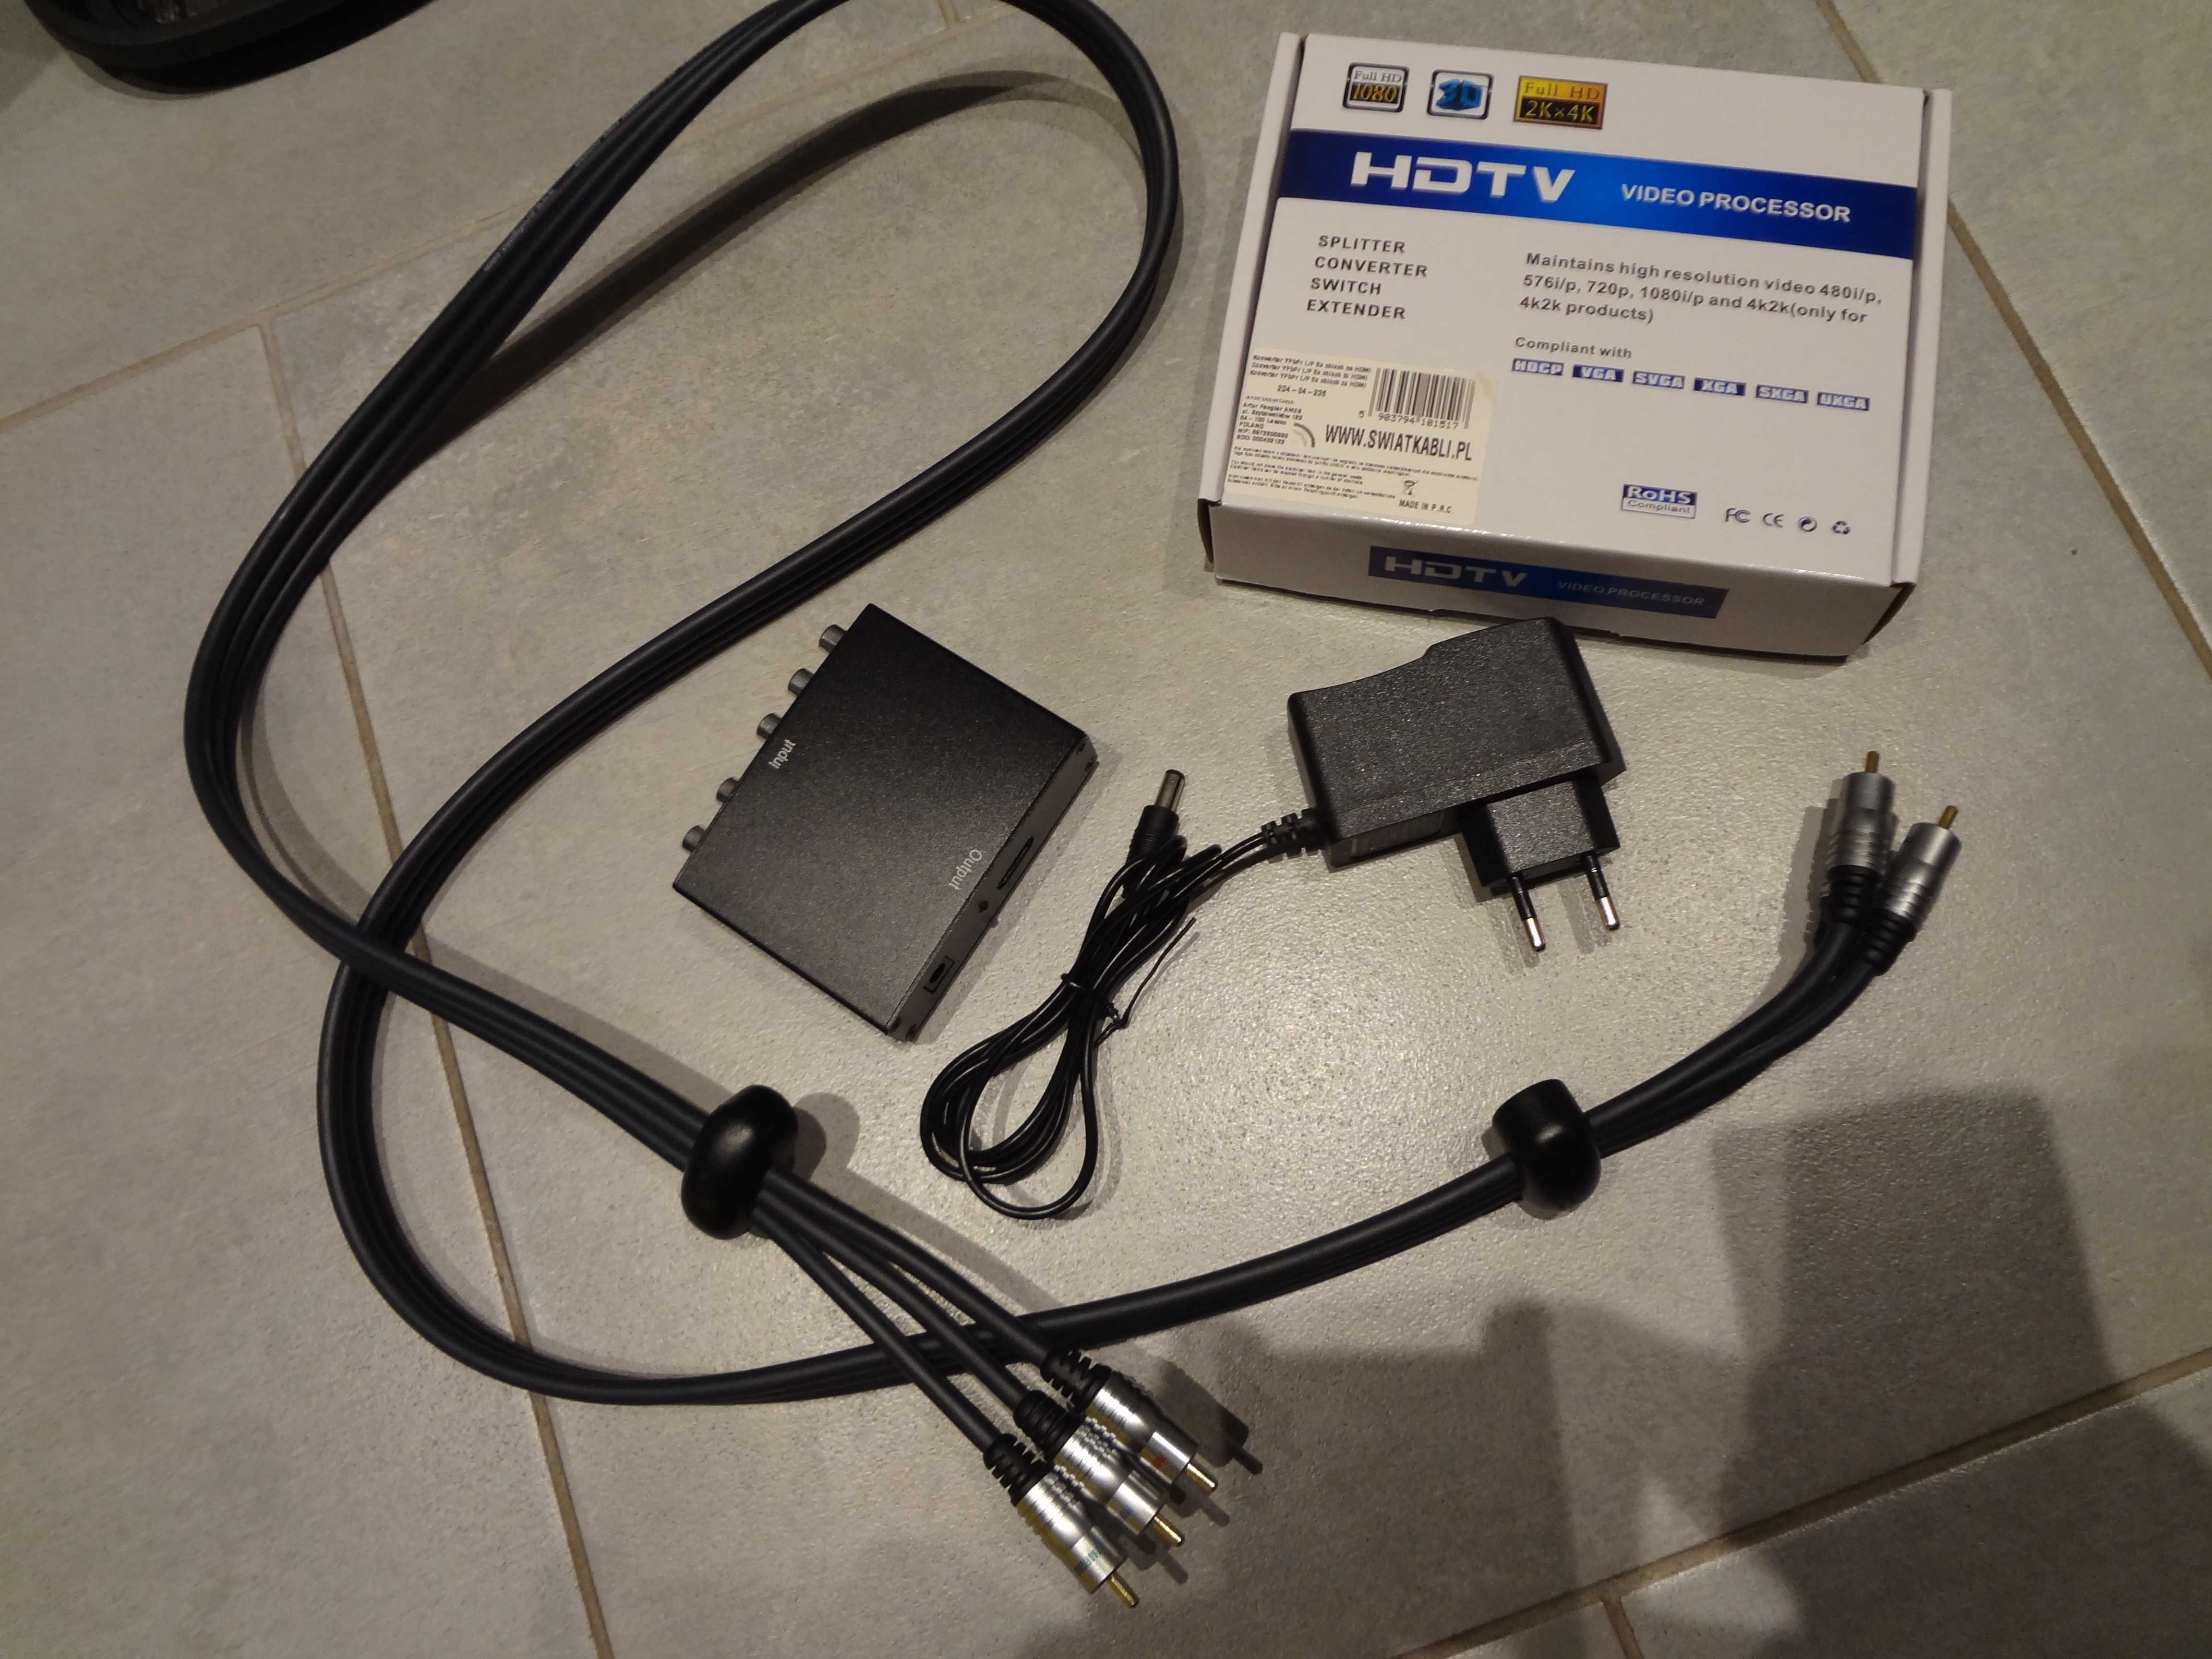 Konwerter Component Video YPbPr Audio L/R do HDMI